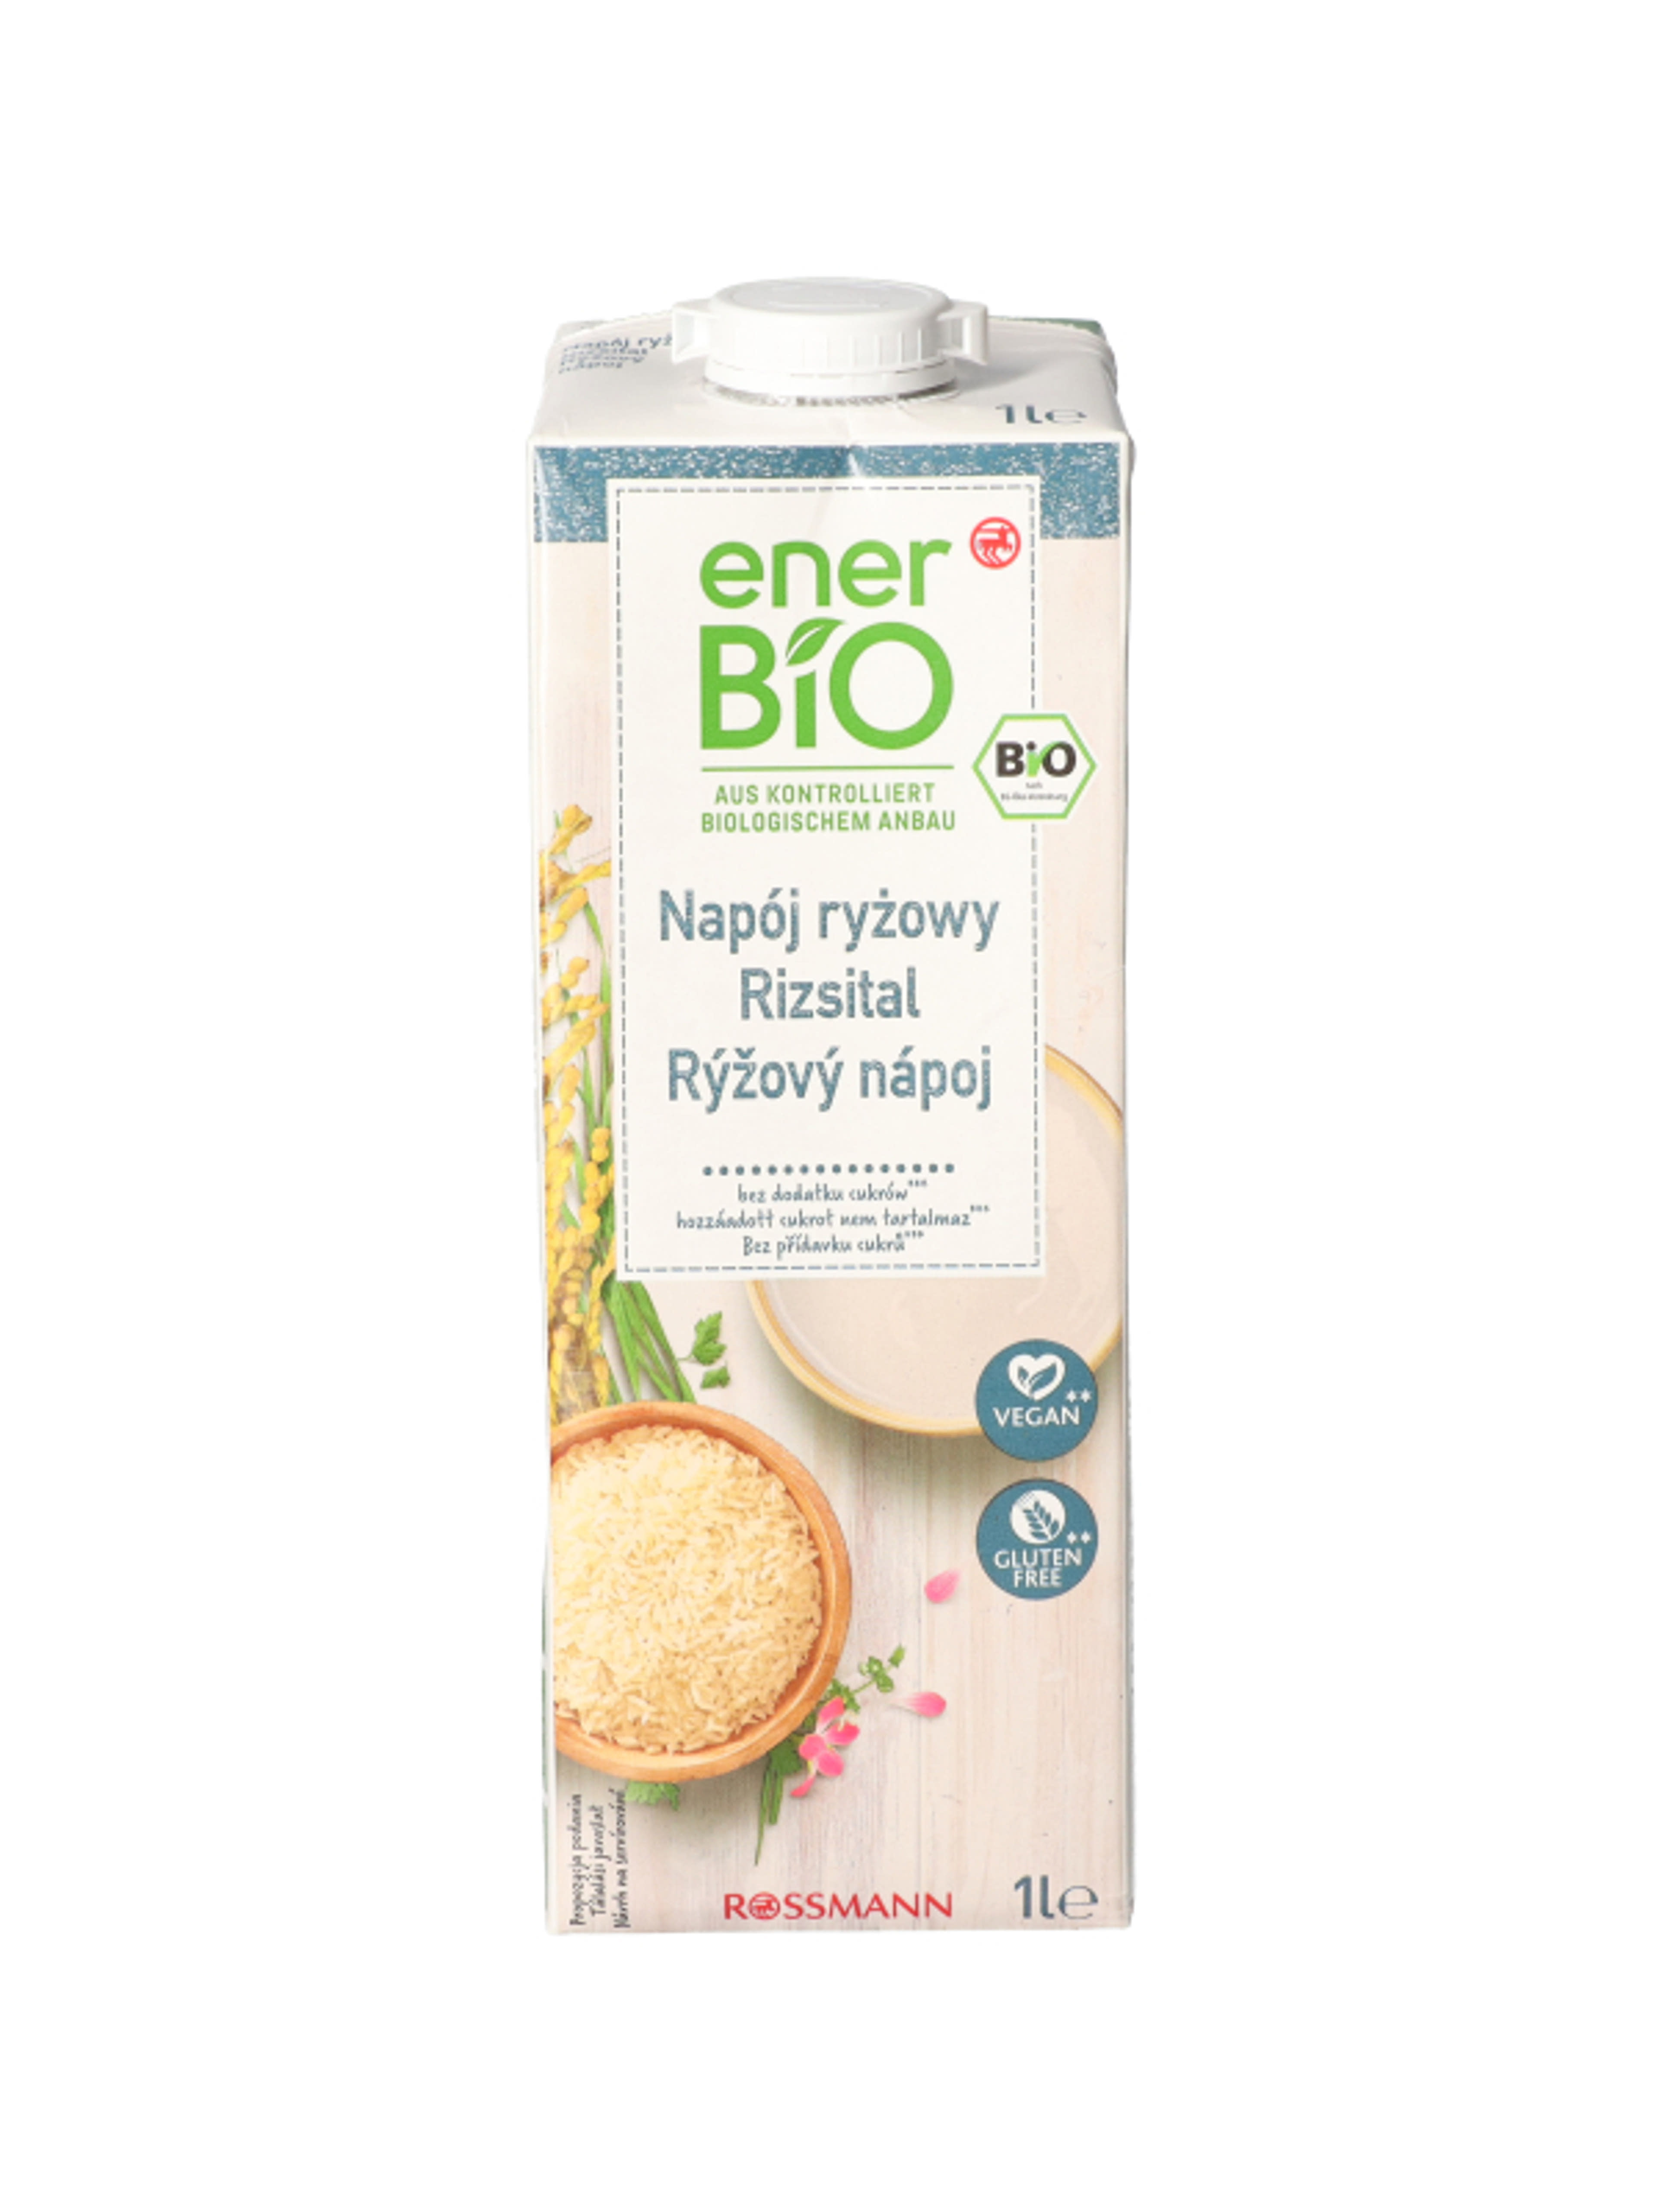 enerBio natúr rizsital - 1 l
hozzáadott cukrot nem tartalmaz
vegán és gluténmentes-1